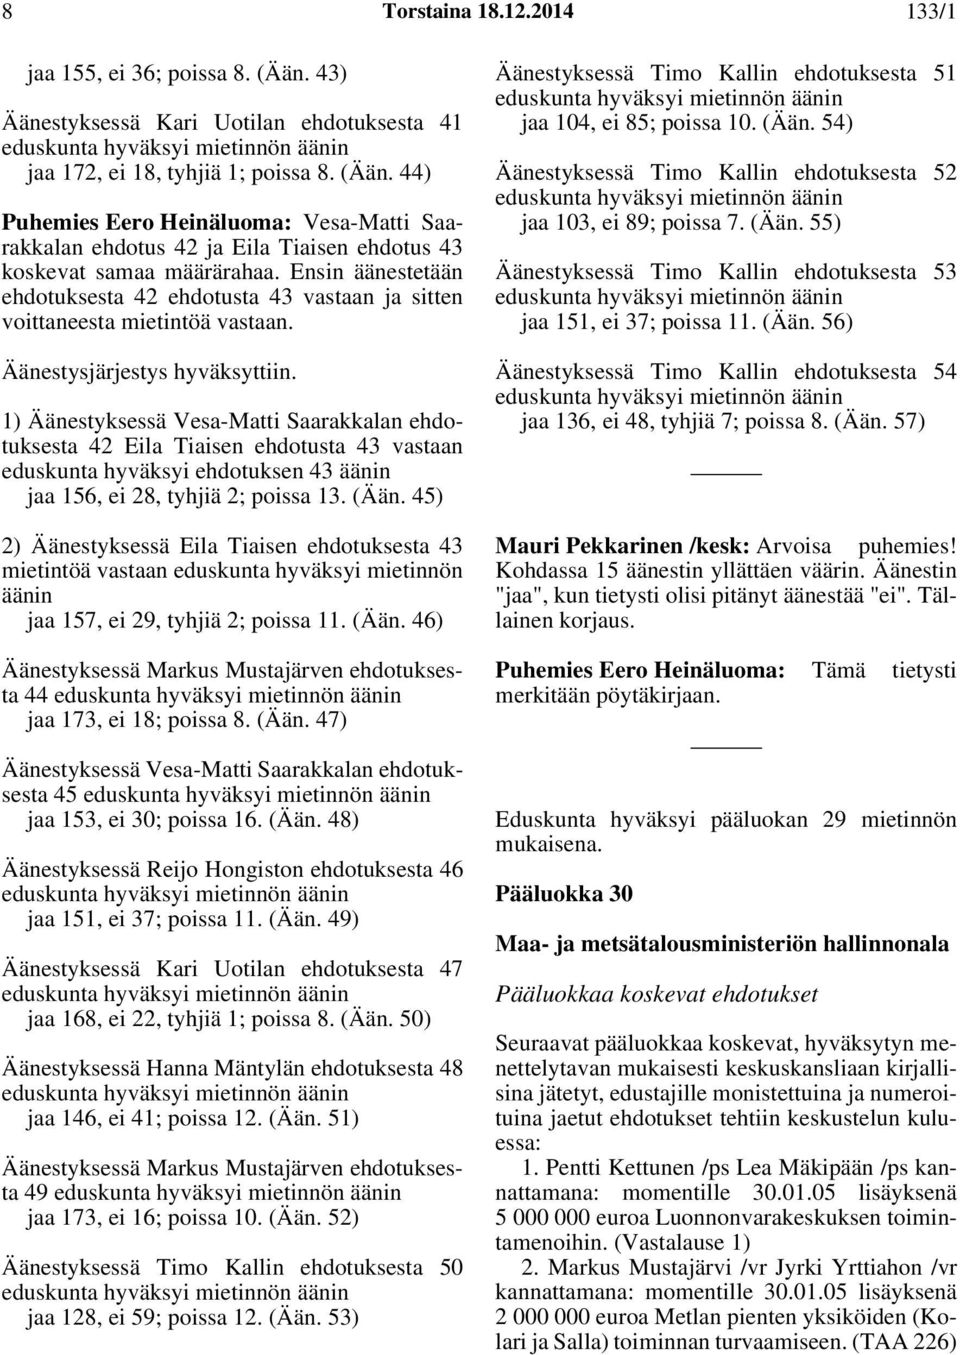 1) Äänestyksessä Vesa-Matti Saarakkalan ehdotuksesta 42 Eila Tiaisen ehdotusta 43 vastaan eduskunta hyväksyi ehdotuksen 43 äänin jaa 156, ei 28, tyhjiä 2; poissa 13. (Ään.